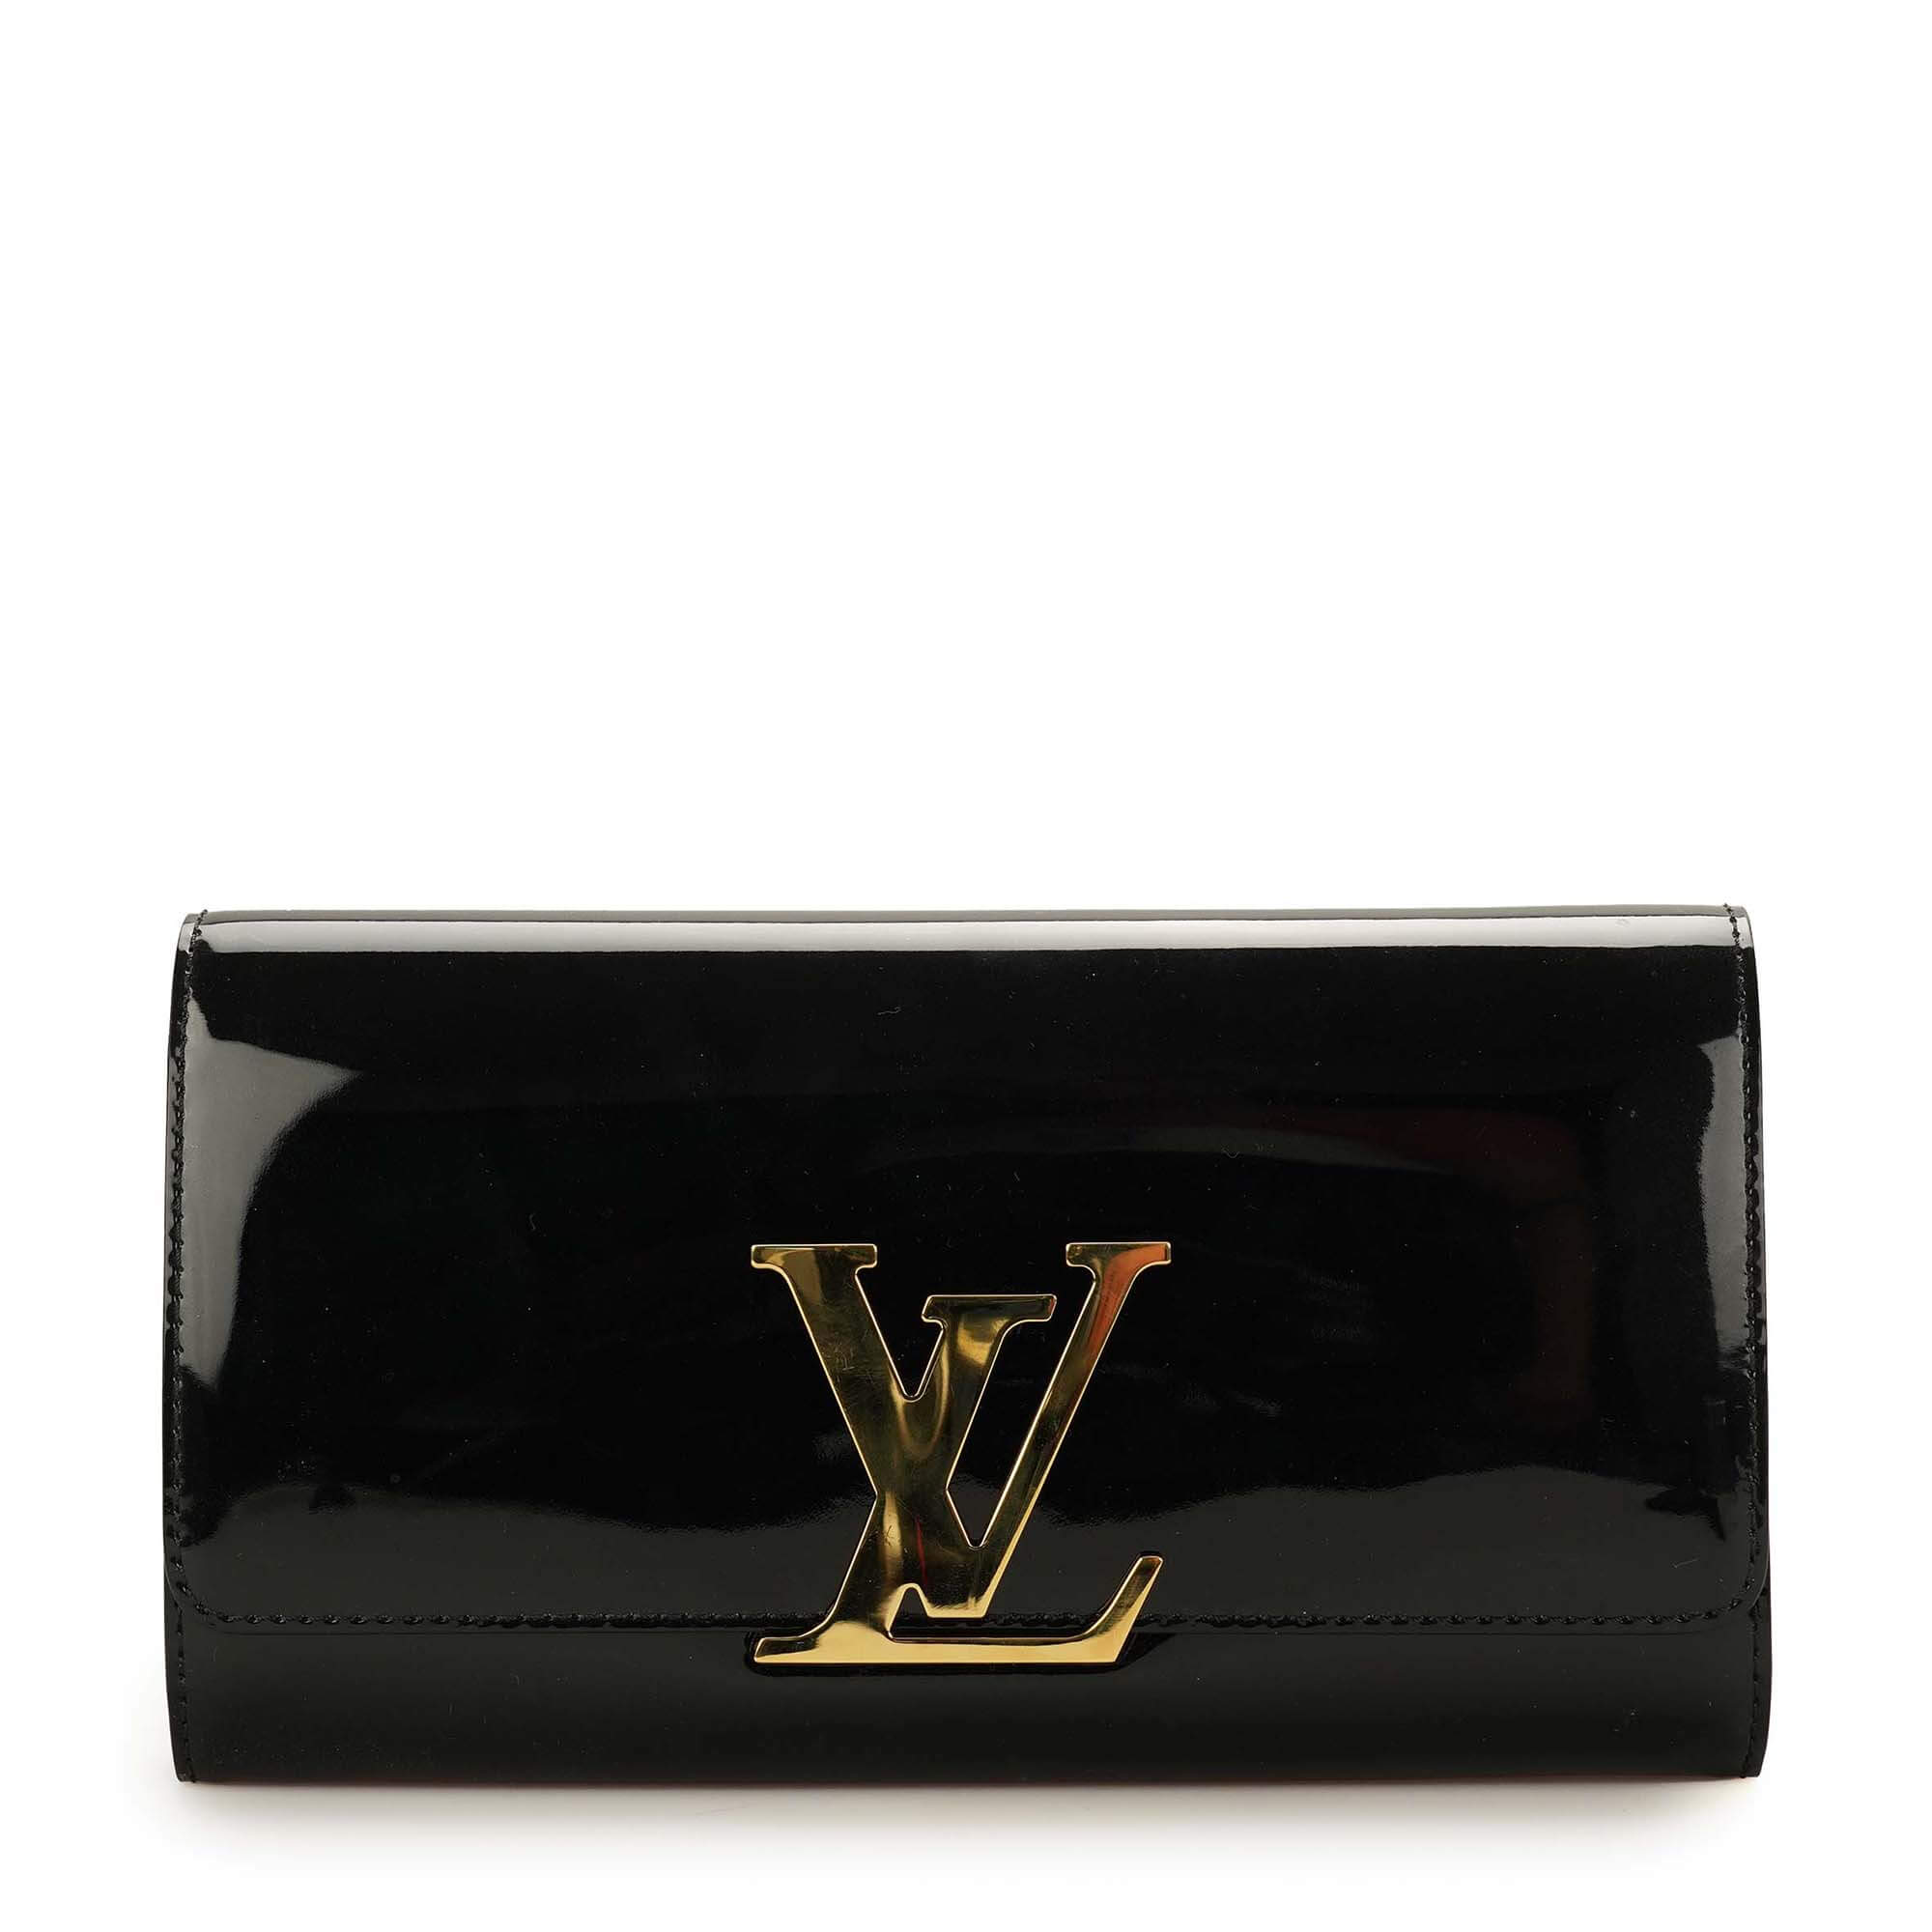 Louis Vuitton - Black Vernis Leather Louise Clutch